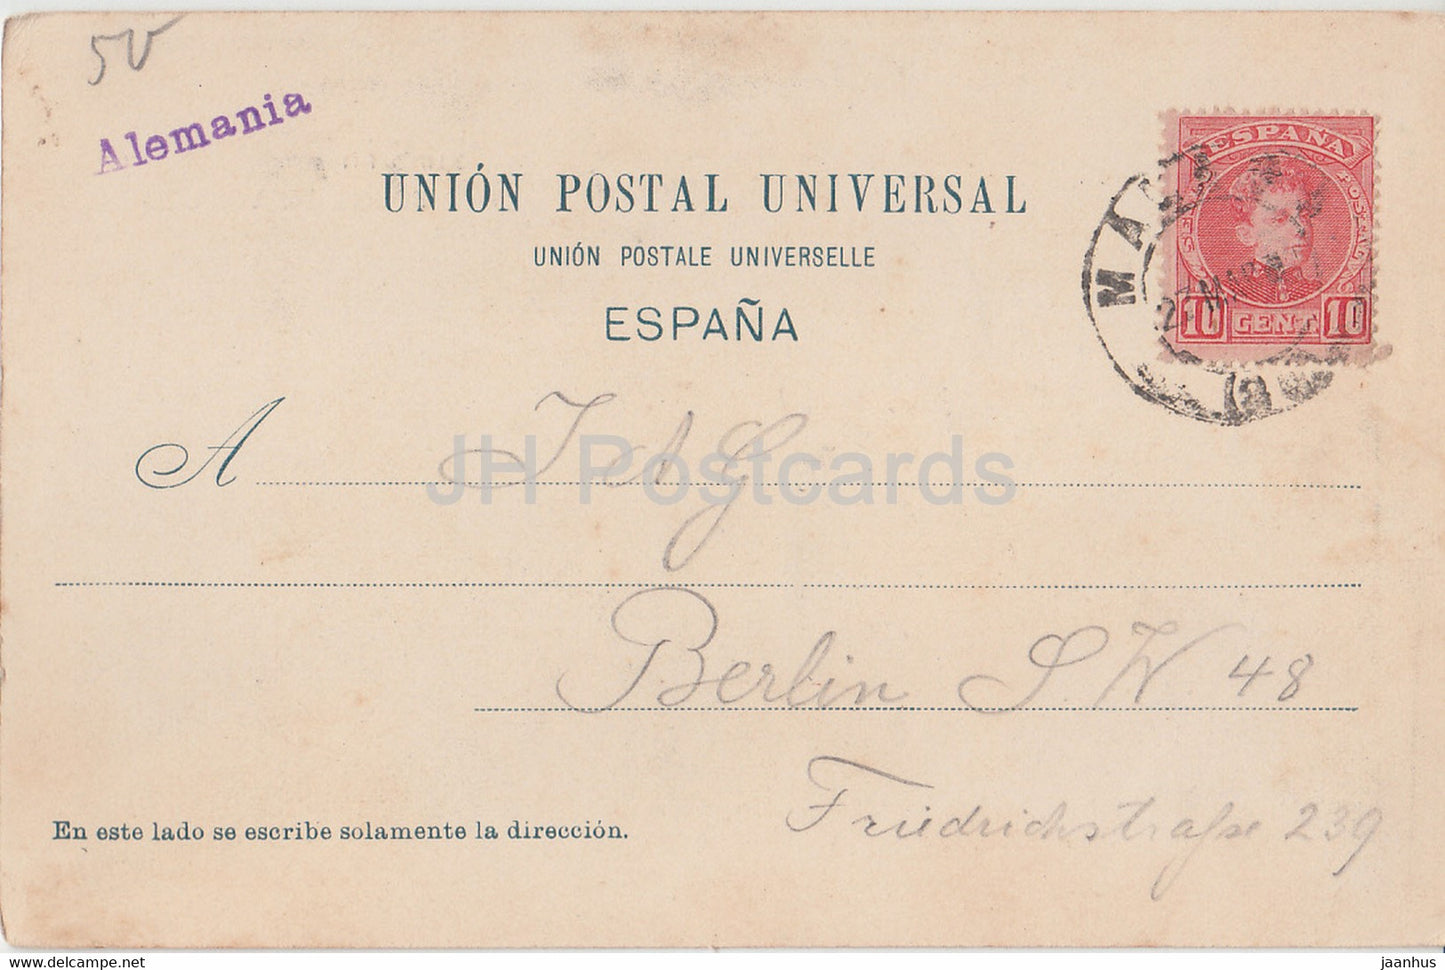 Corrida de Toros - Un Quite - 210 - old postcard - Spain - used